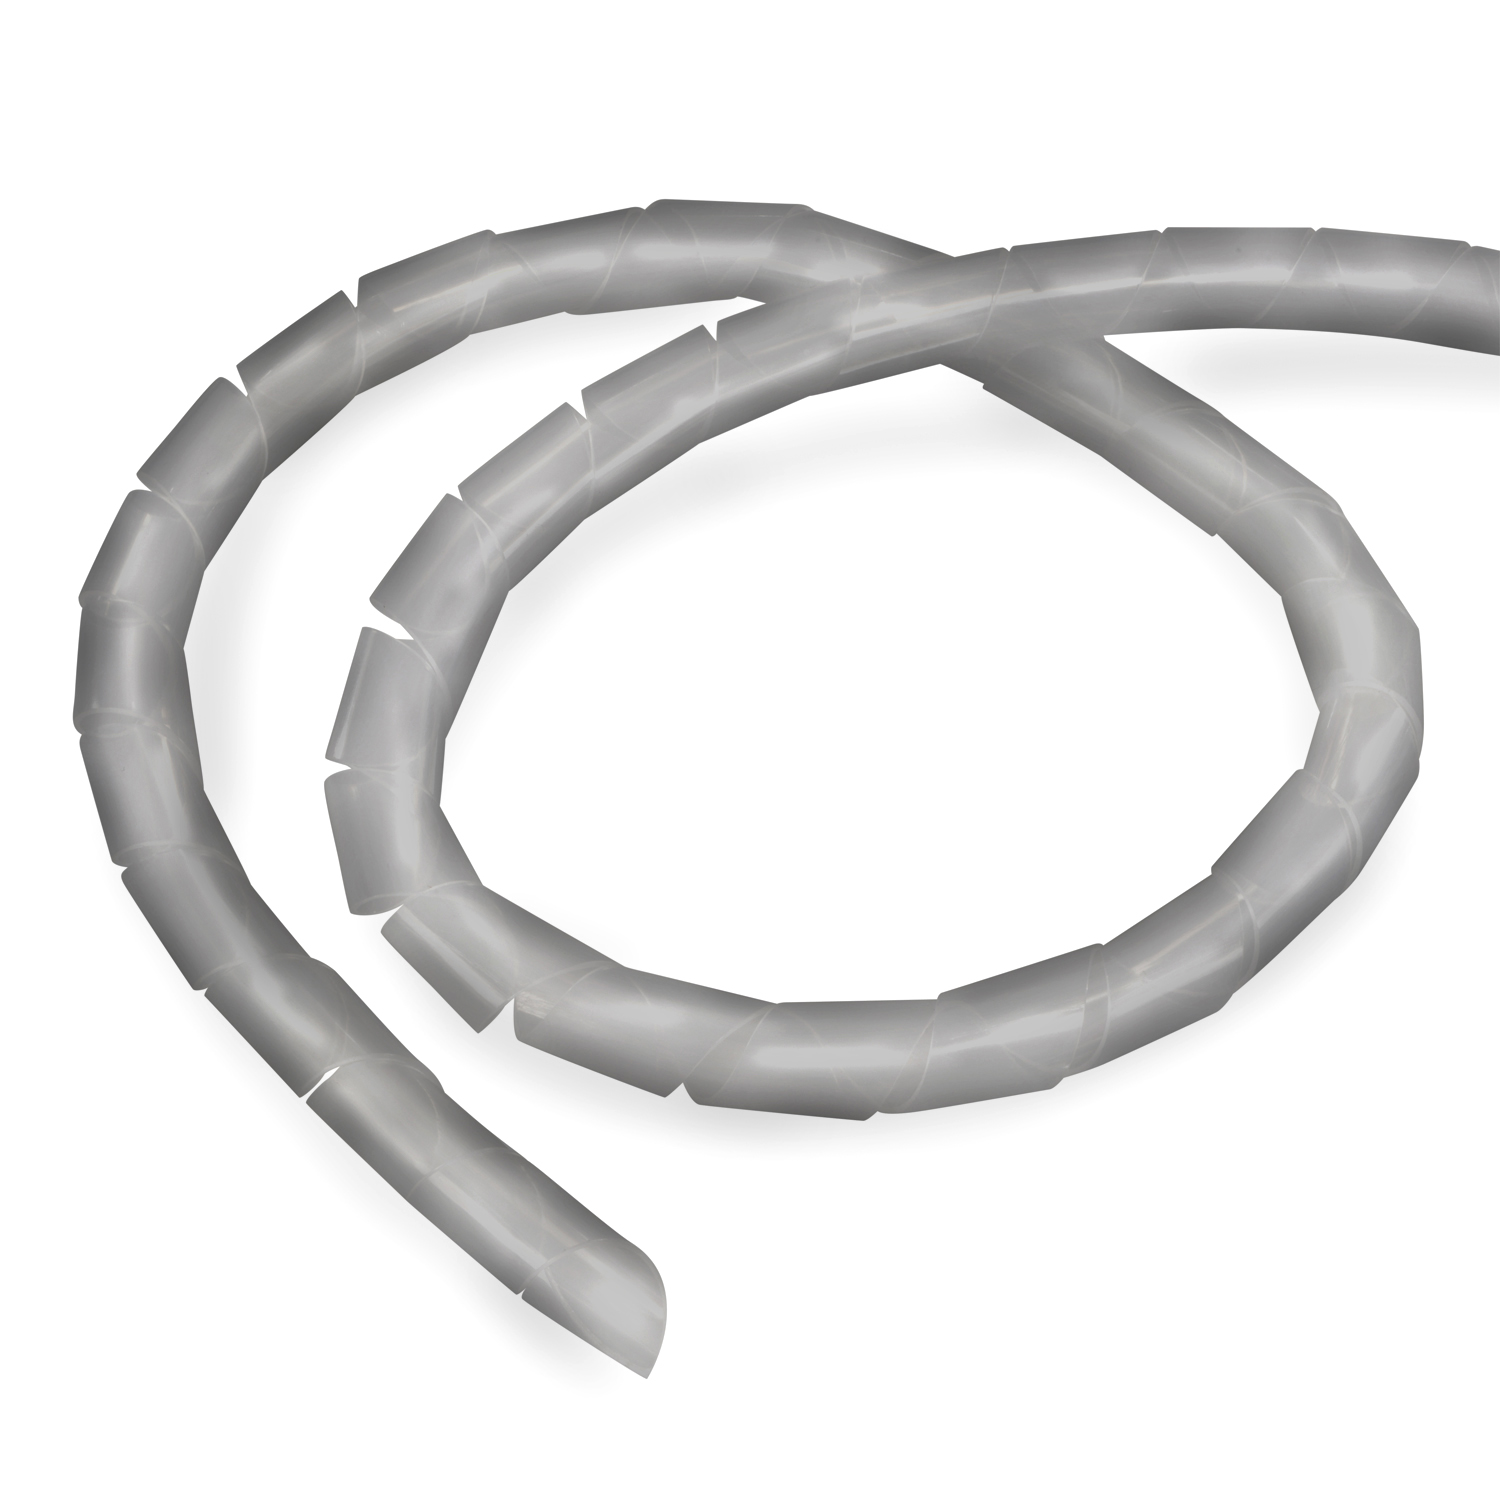 4-50mm, Spiral-Kabelschlauch TPFNET Kabelschlauch, Silber, 10m Premium Silber